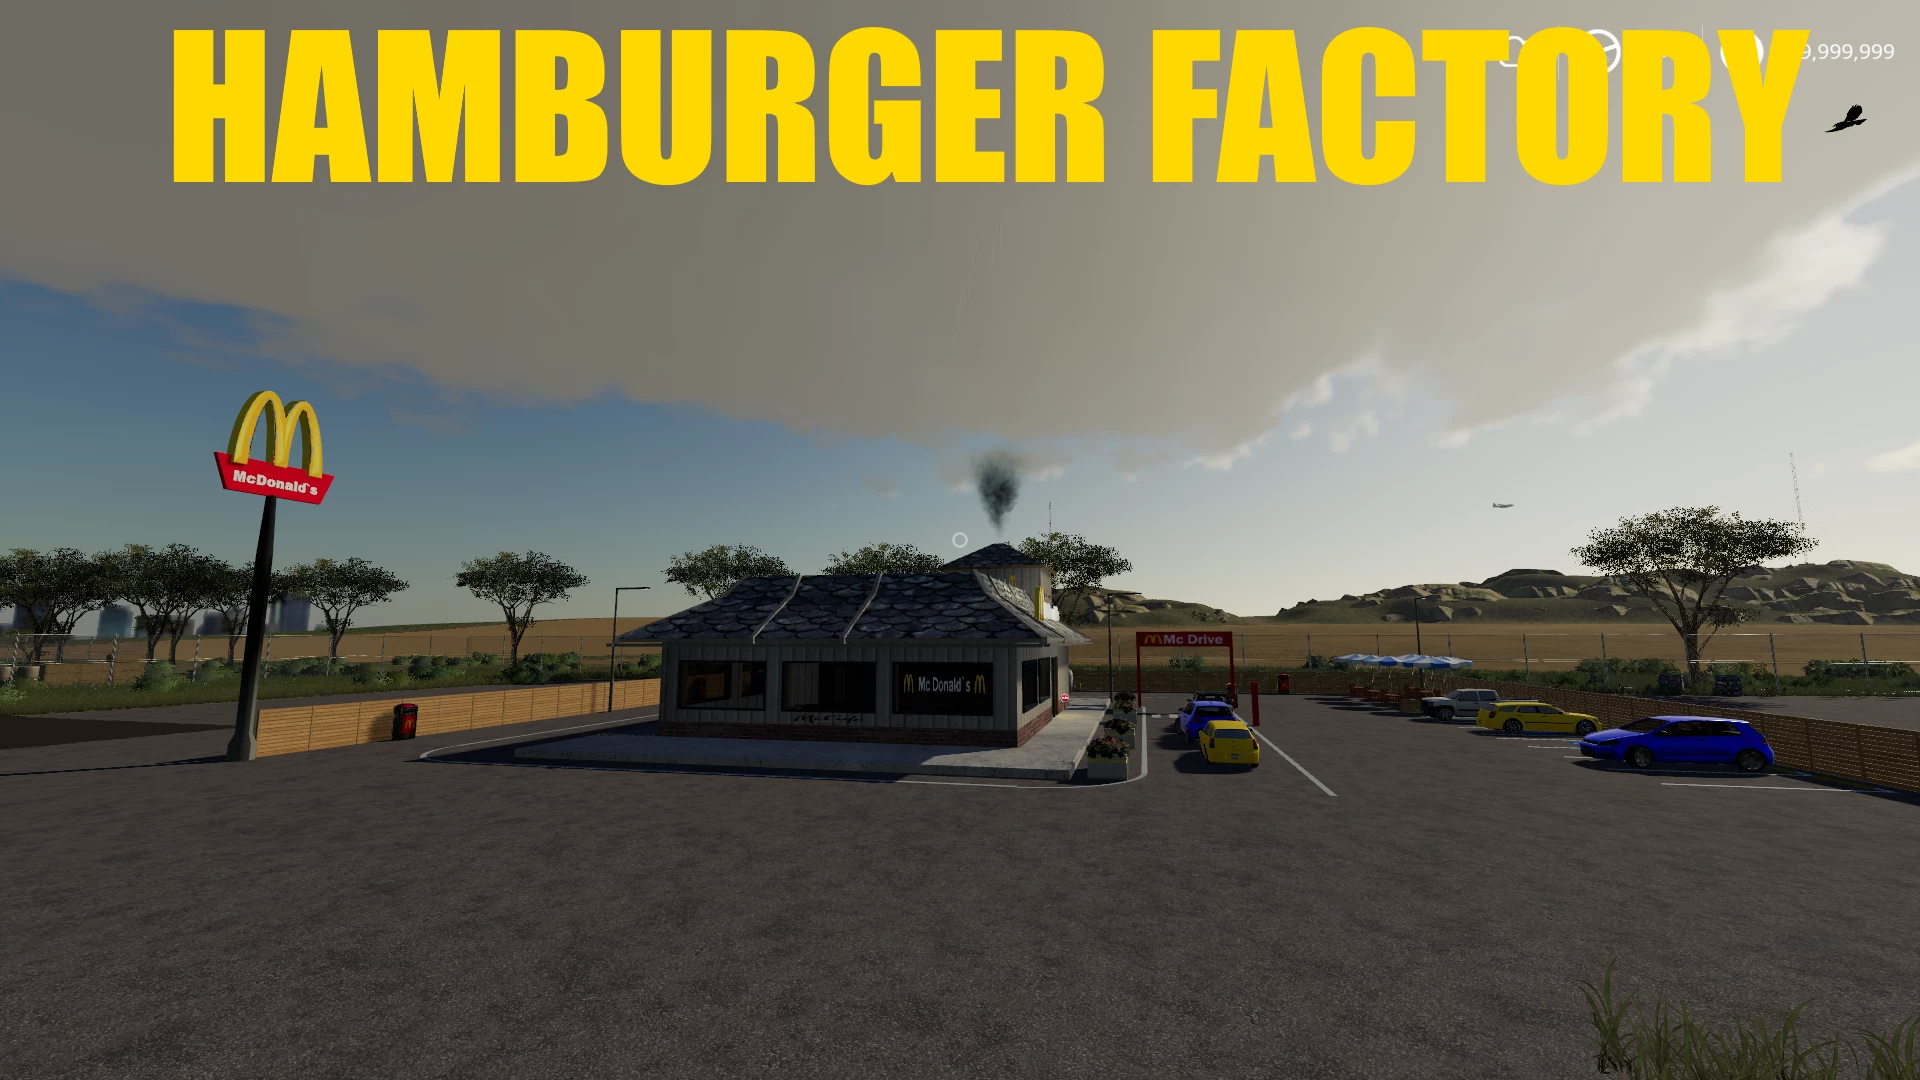 Hamburger Factory v1.0 FS19 | Farming Simulator 19 Mod